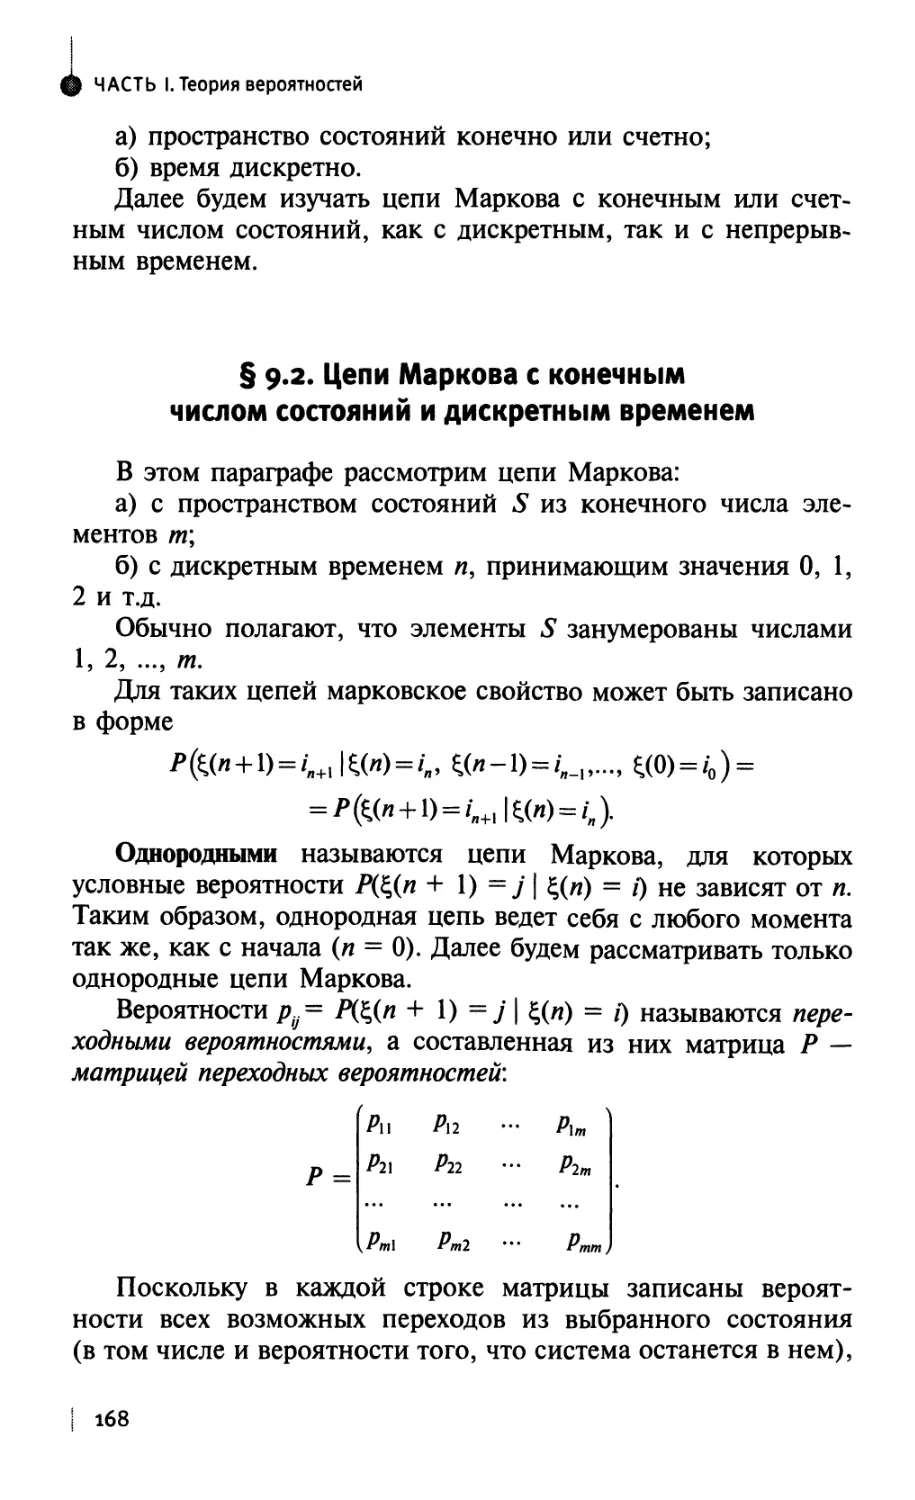 § 9.2. Цепи Маркова с конечным числом состояний и дискретным временем